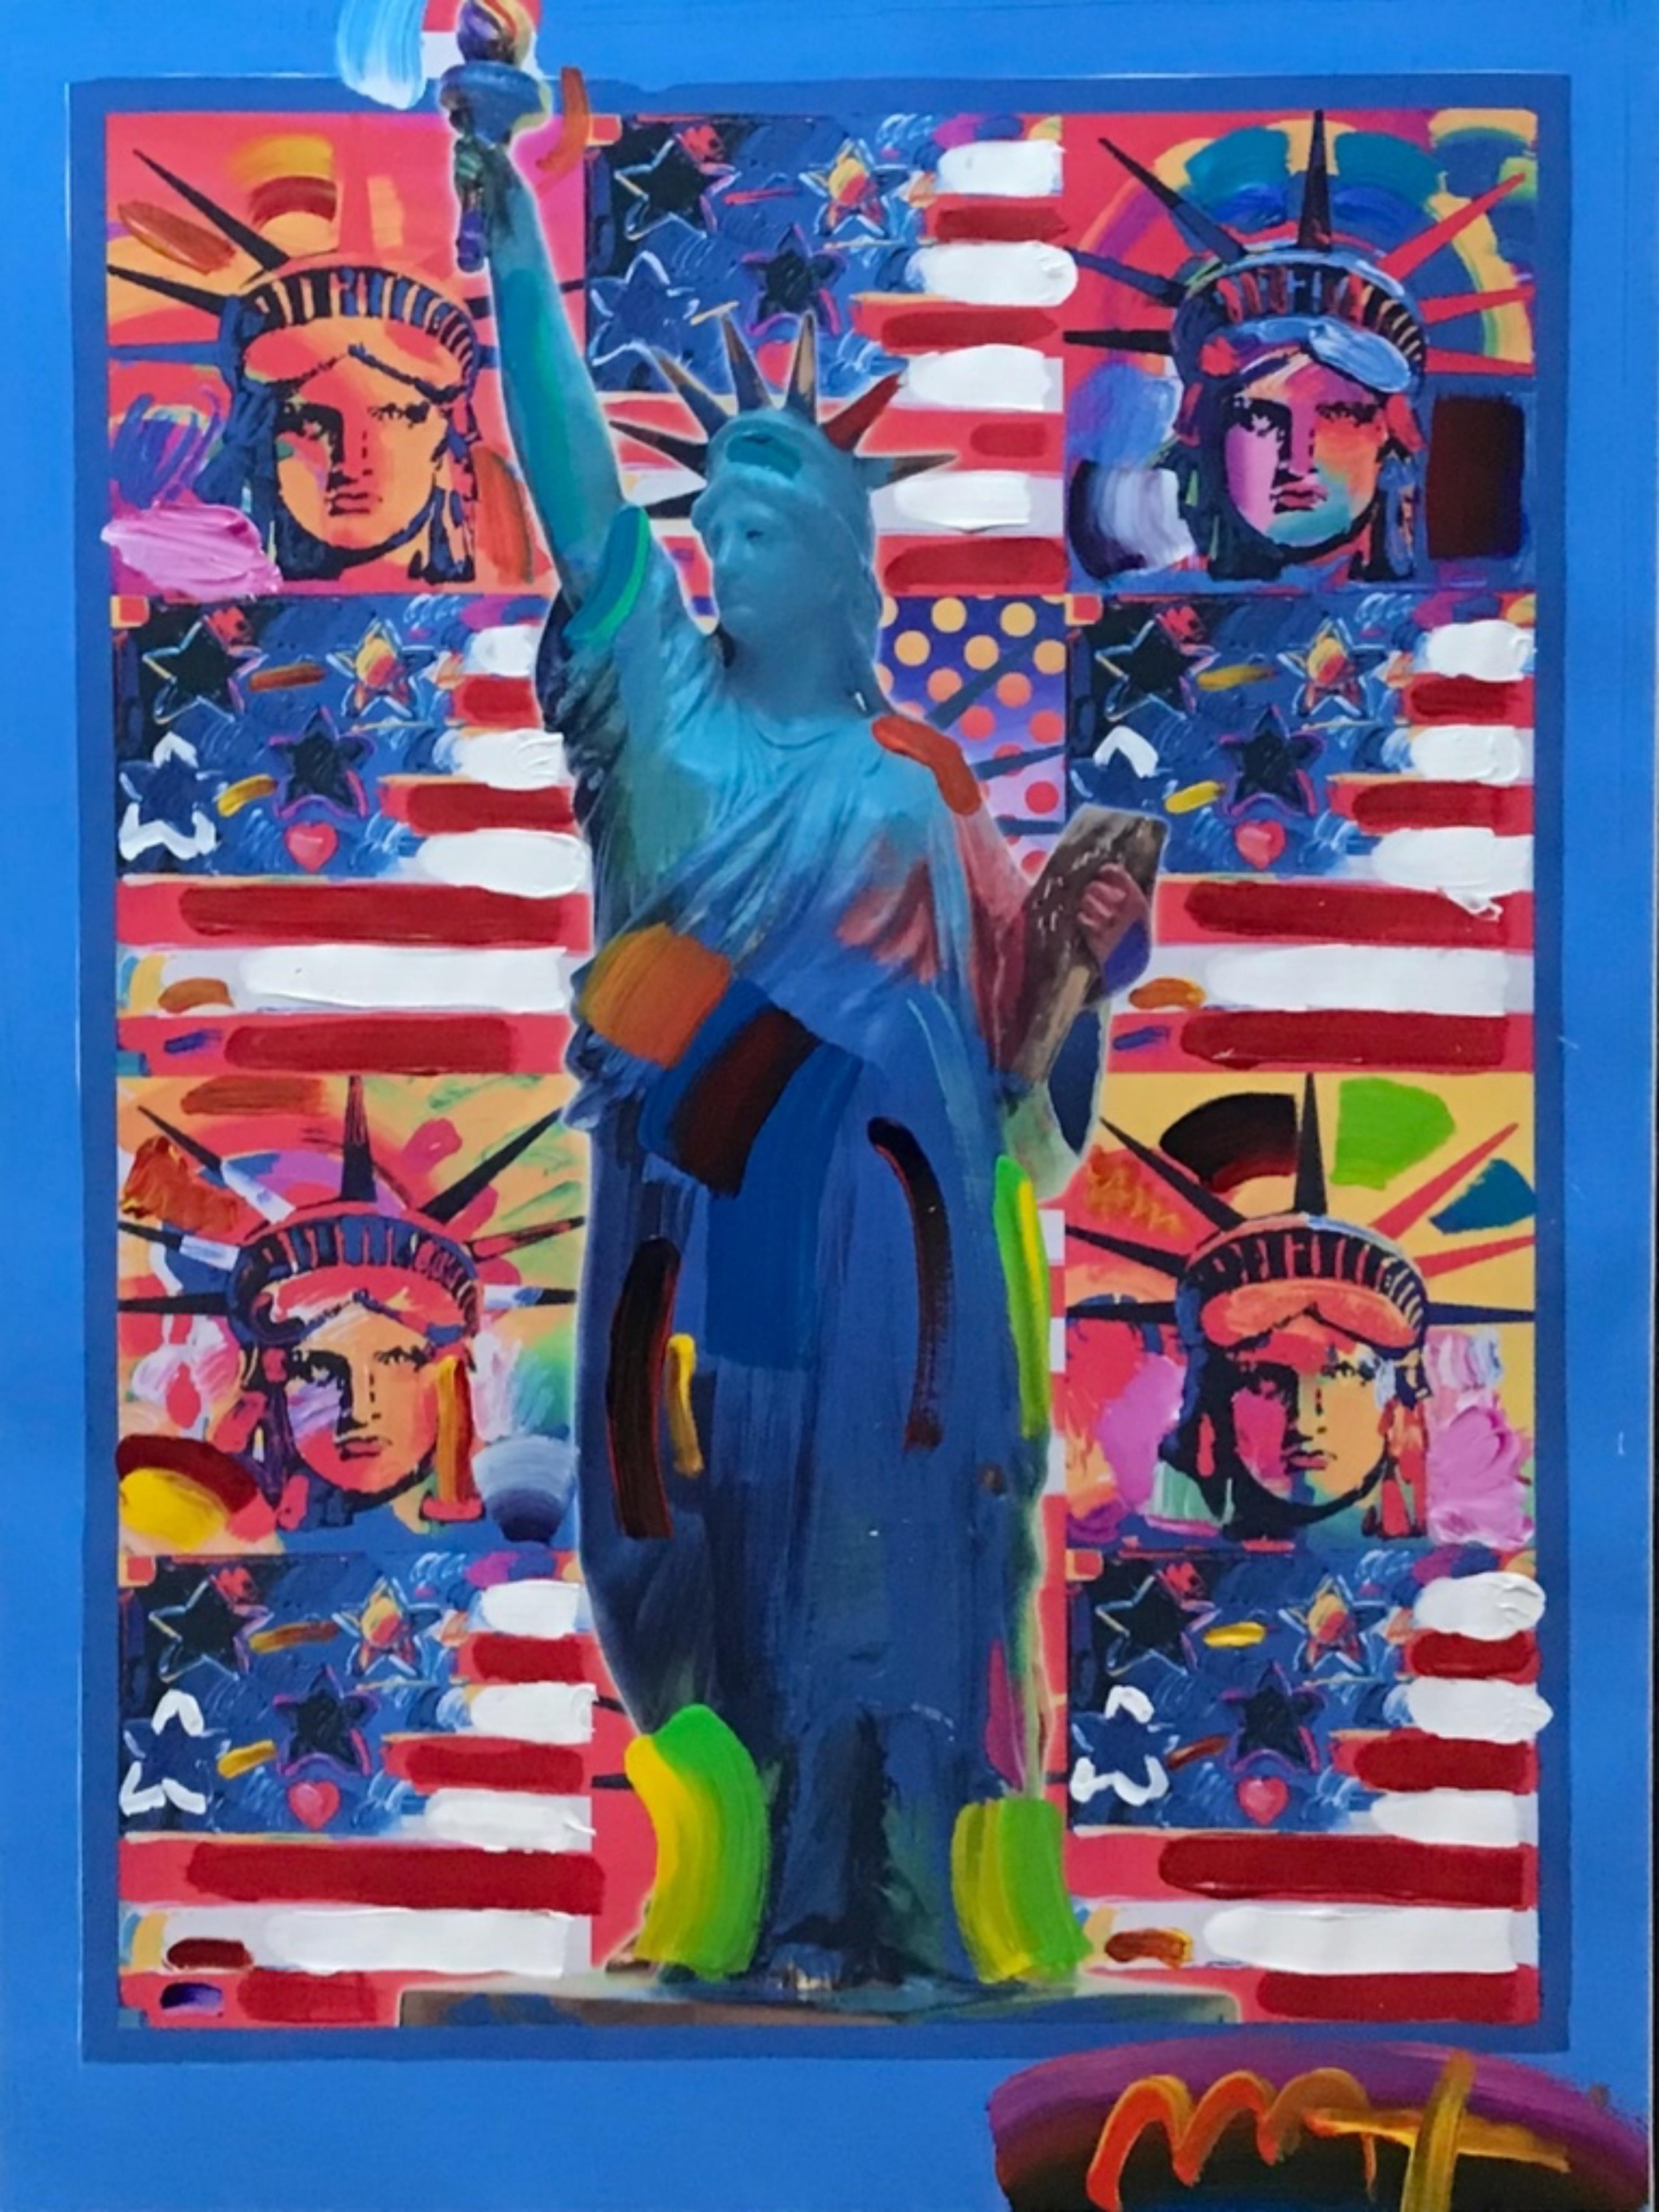 God Blessing America II peinture unique (signée deux fois) avec Statue de la Liberté - Mixed Media Art de Peter Max